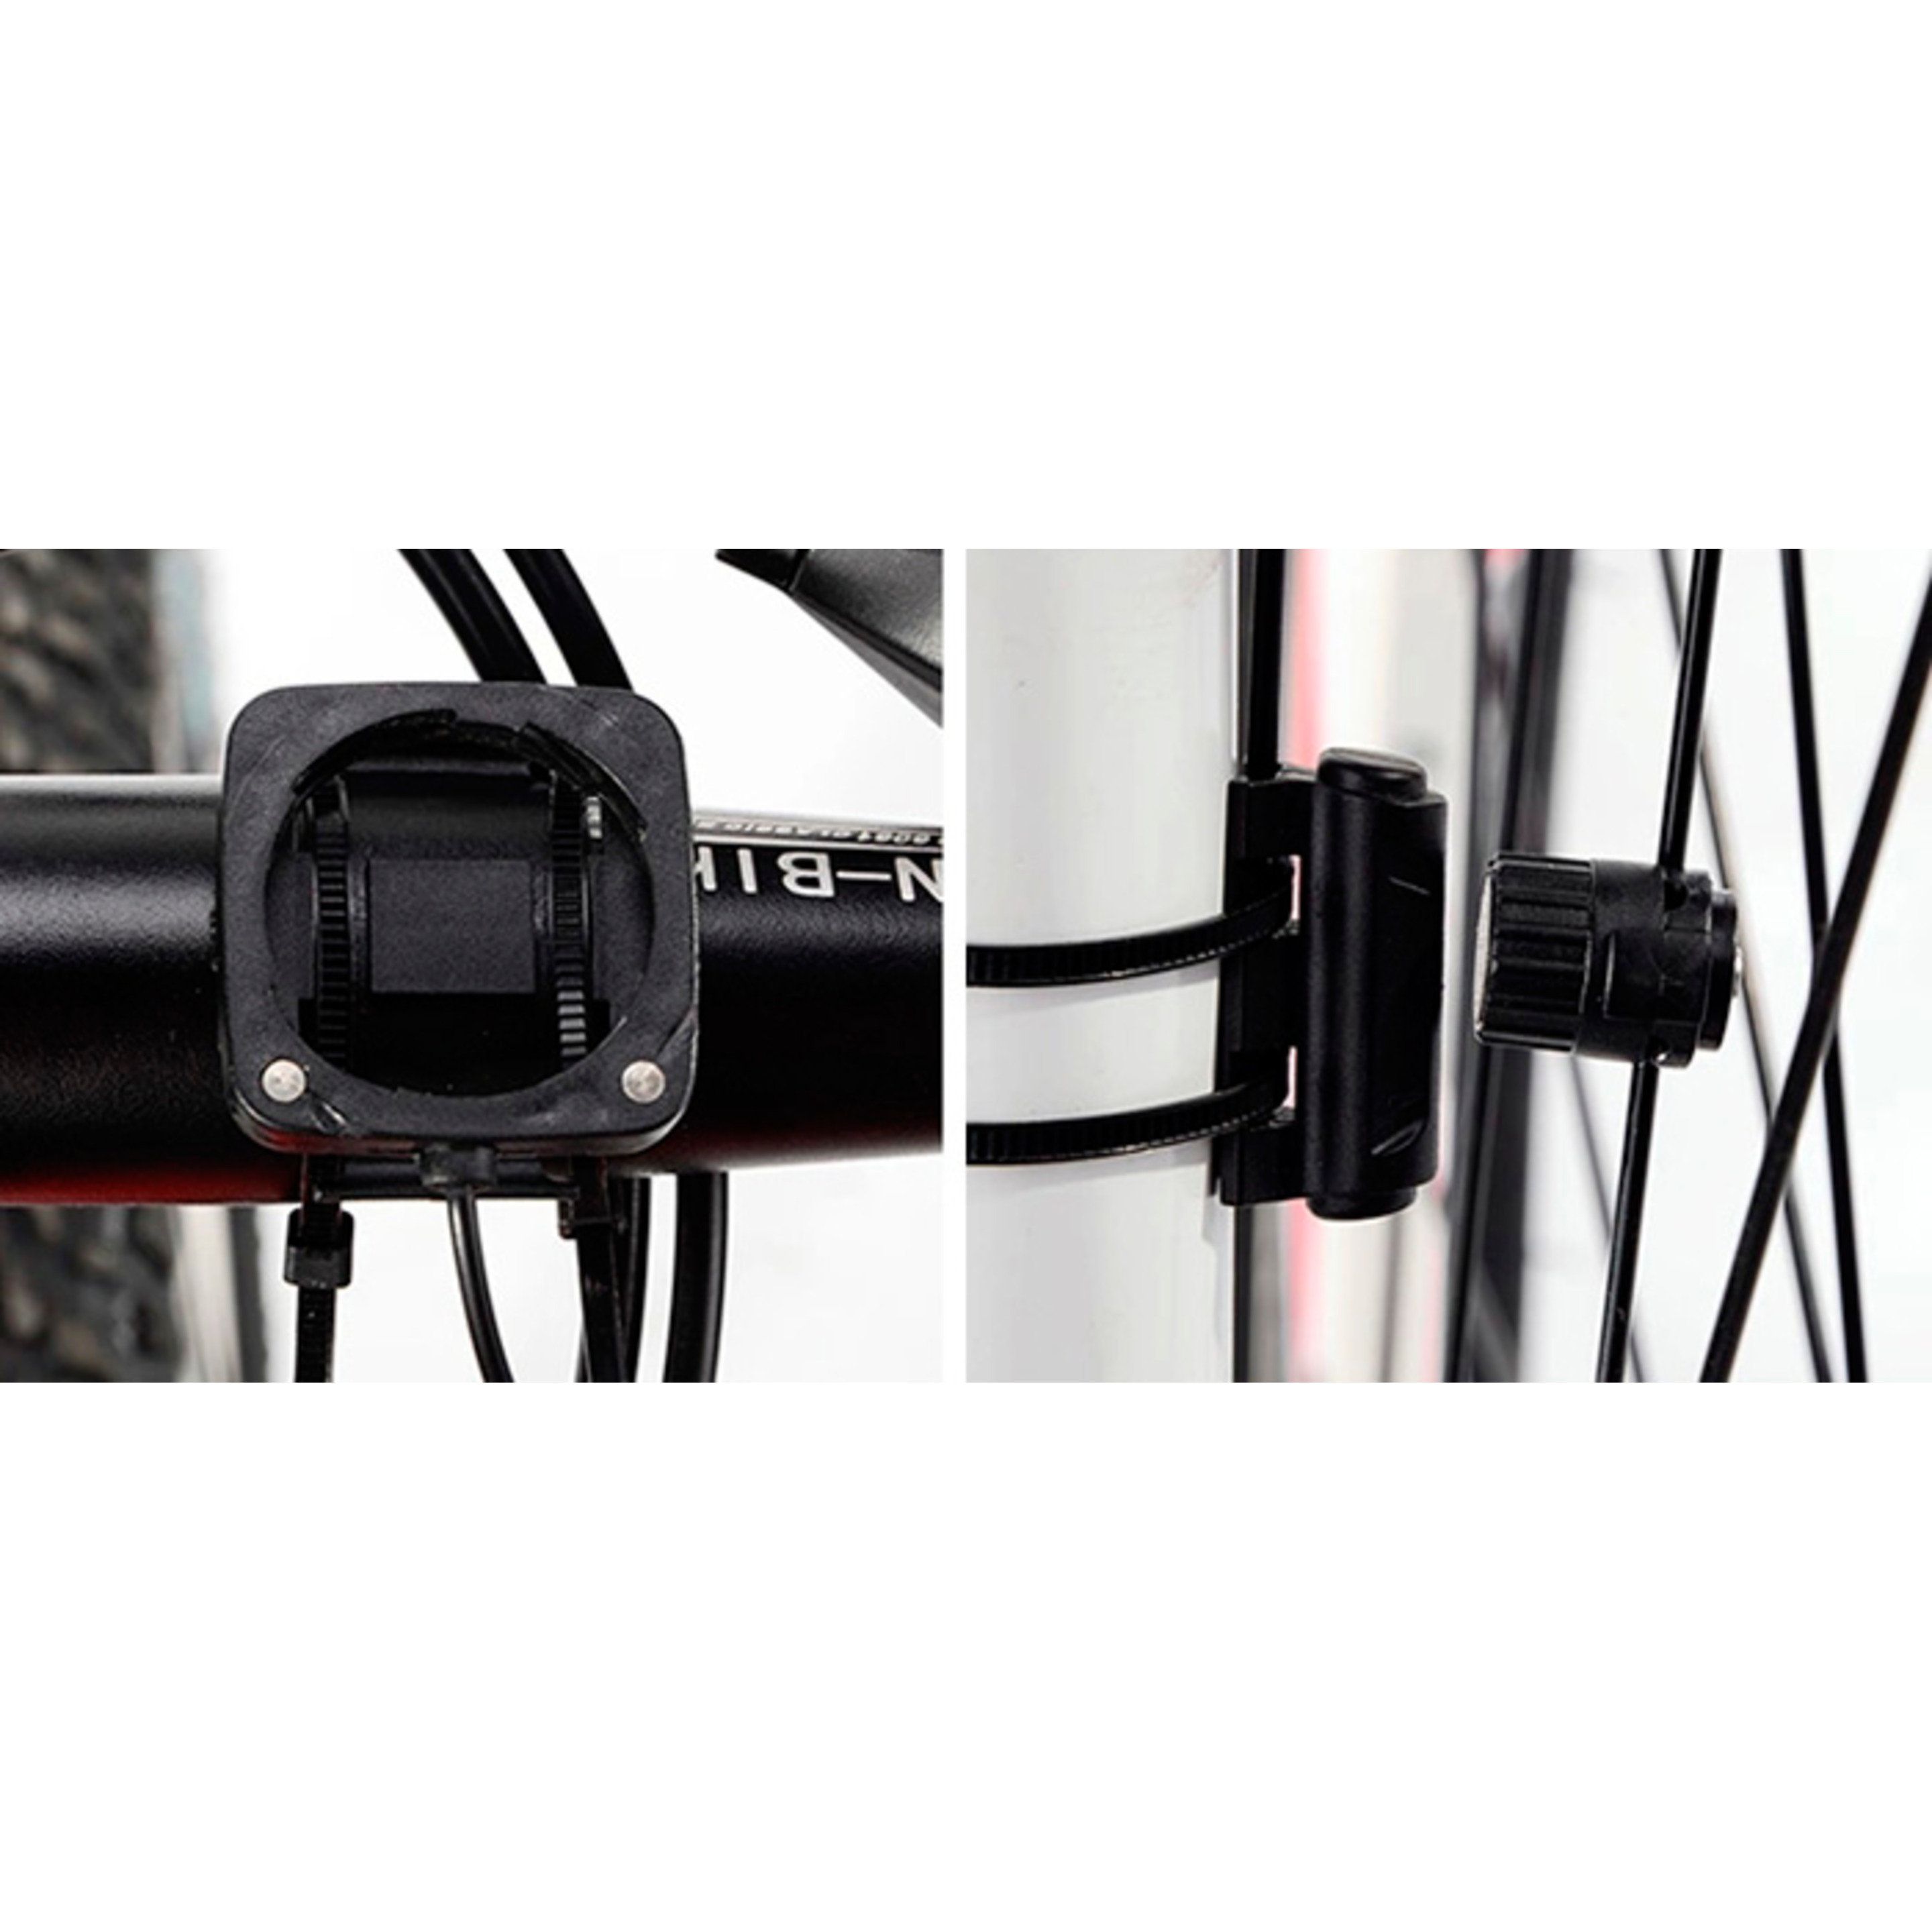 Cuentakilómetros Digital Multifunción Bicicleta Inbike Ic528 - Negro  MKP